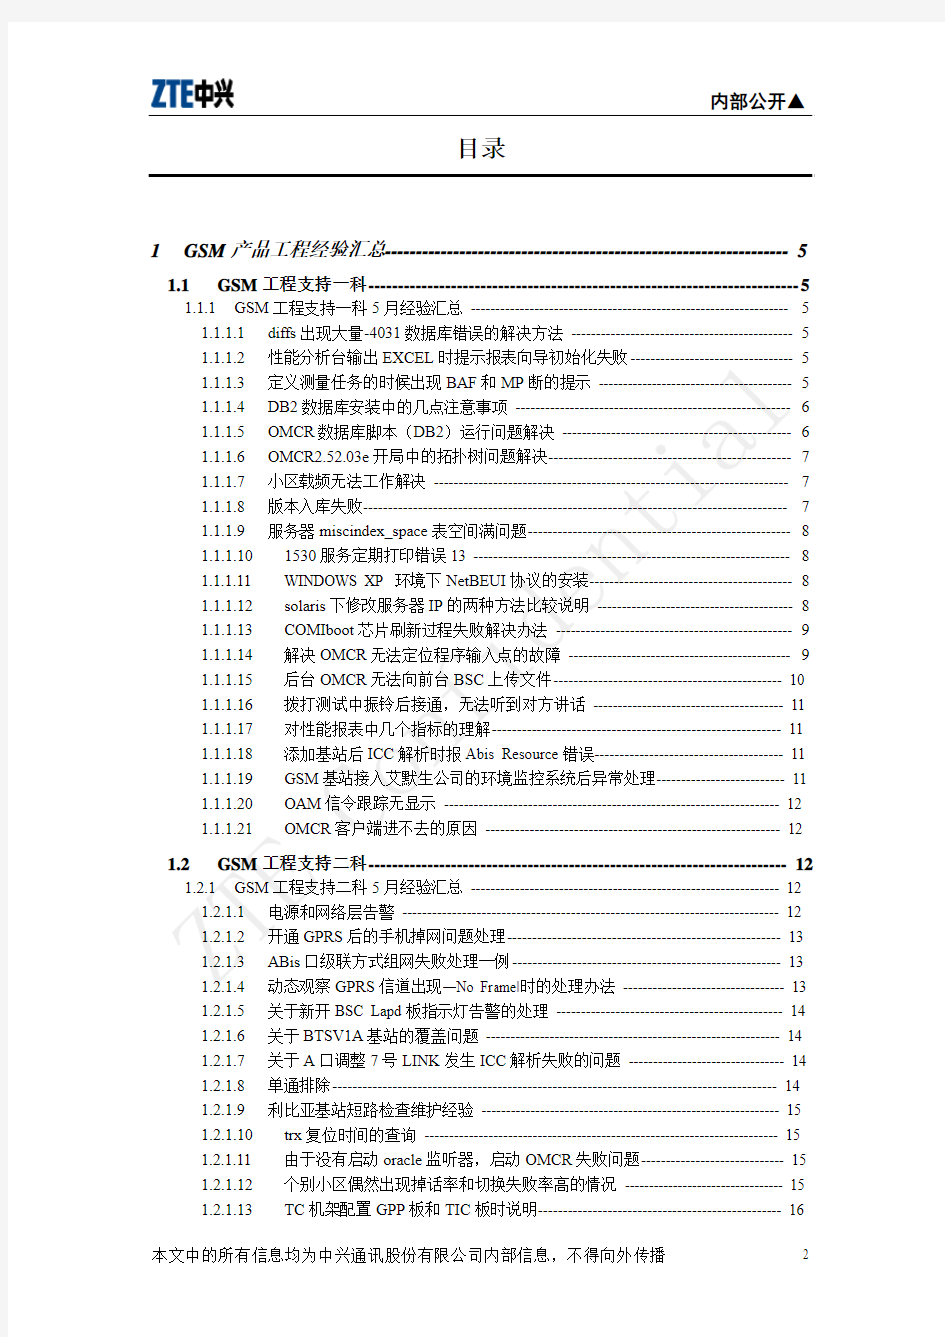 上海用服部 ZXG10-BSS 2005年05月份工程经验汇总